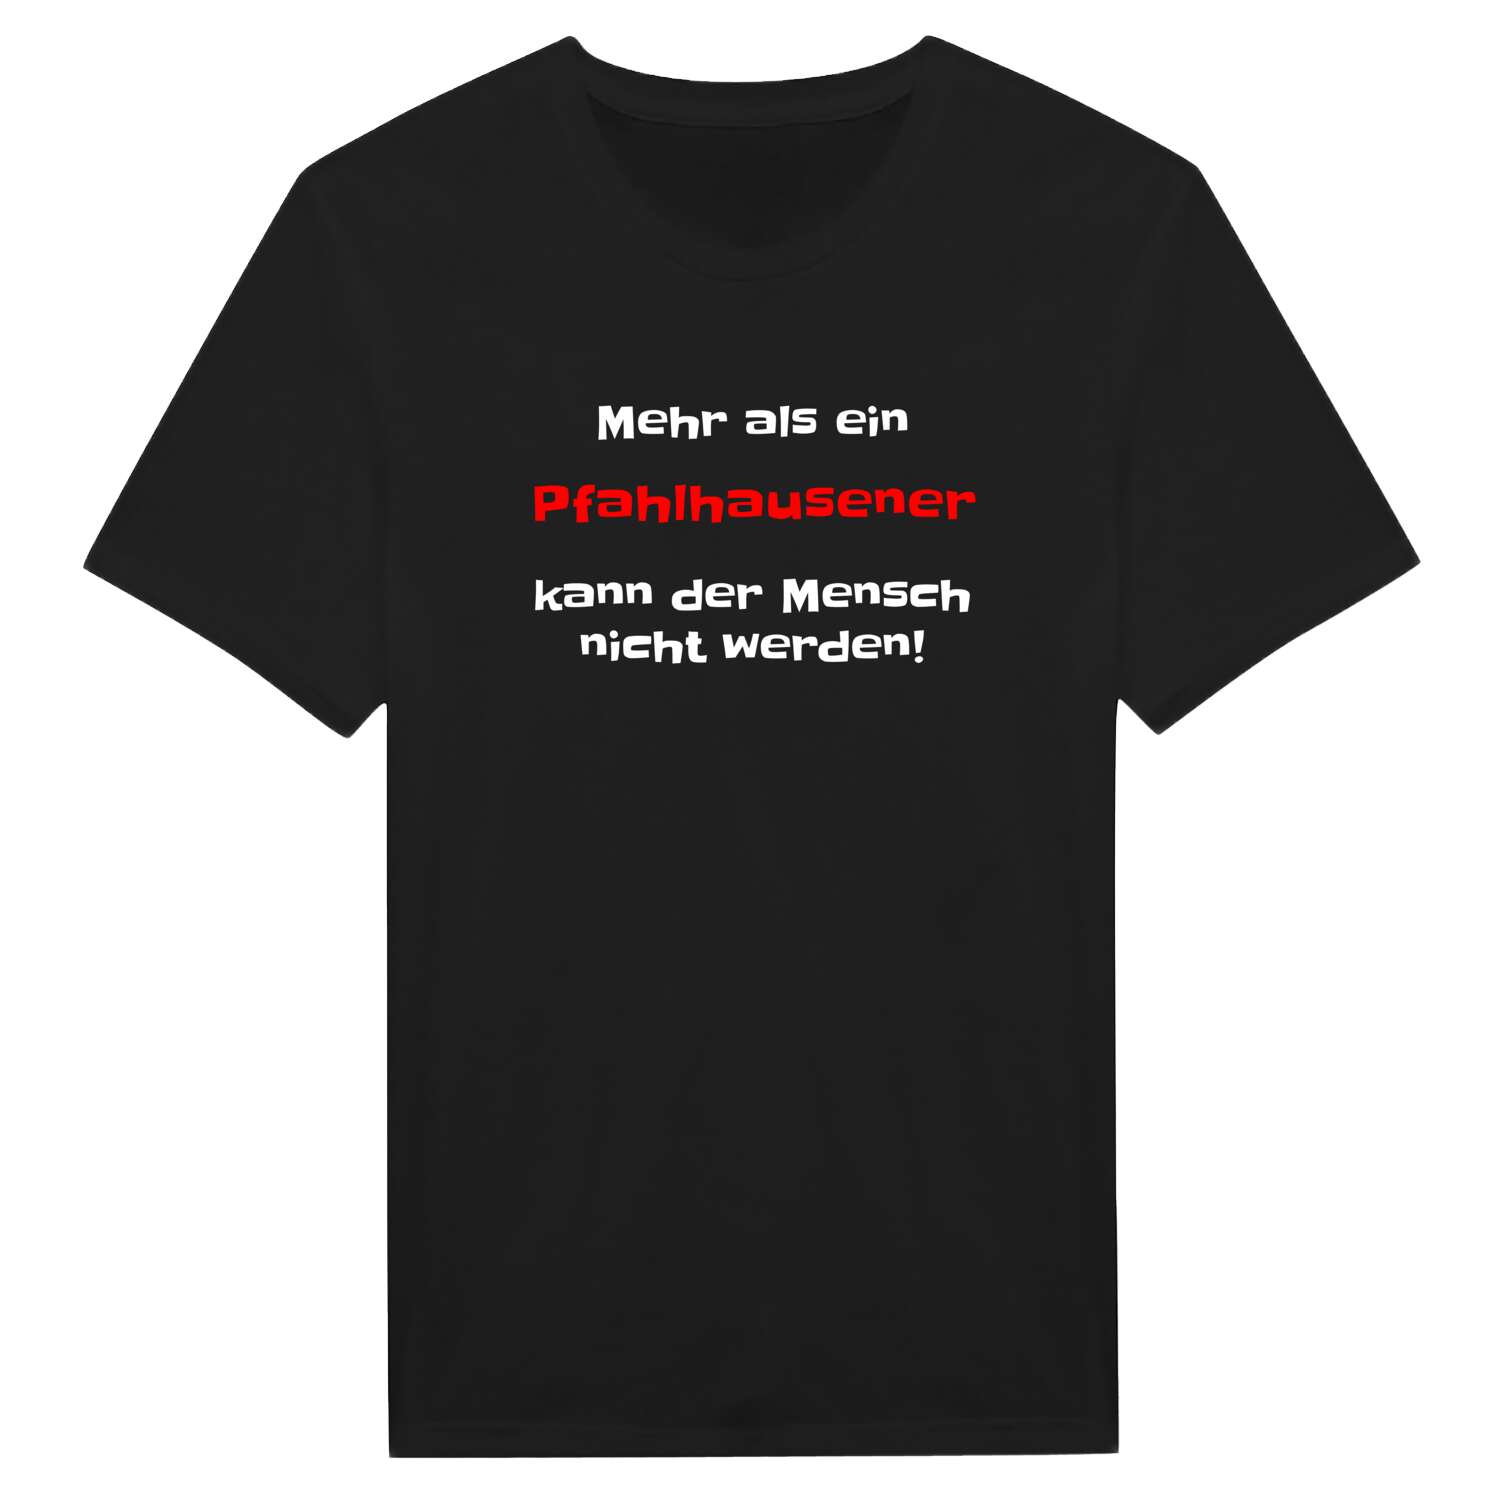 Pfahlhausen T-Shirt »Mehr als ein«